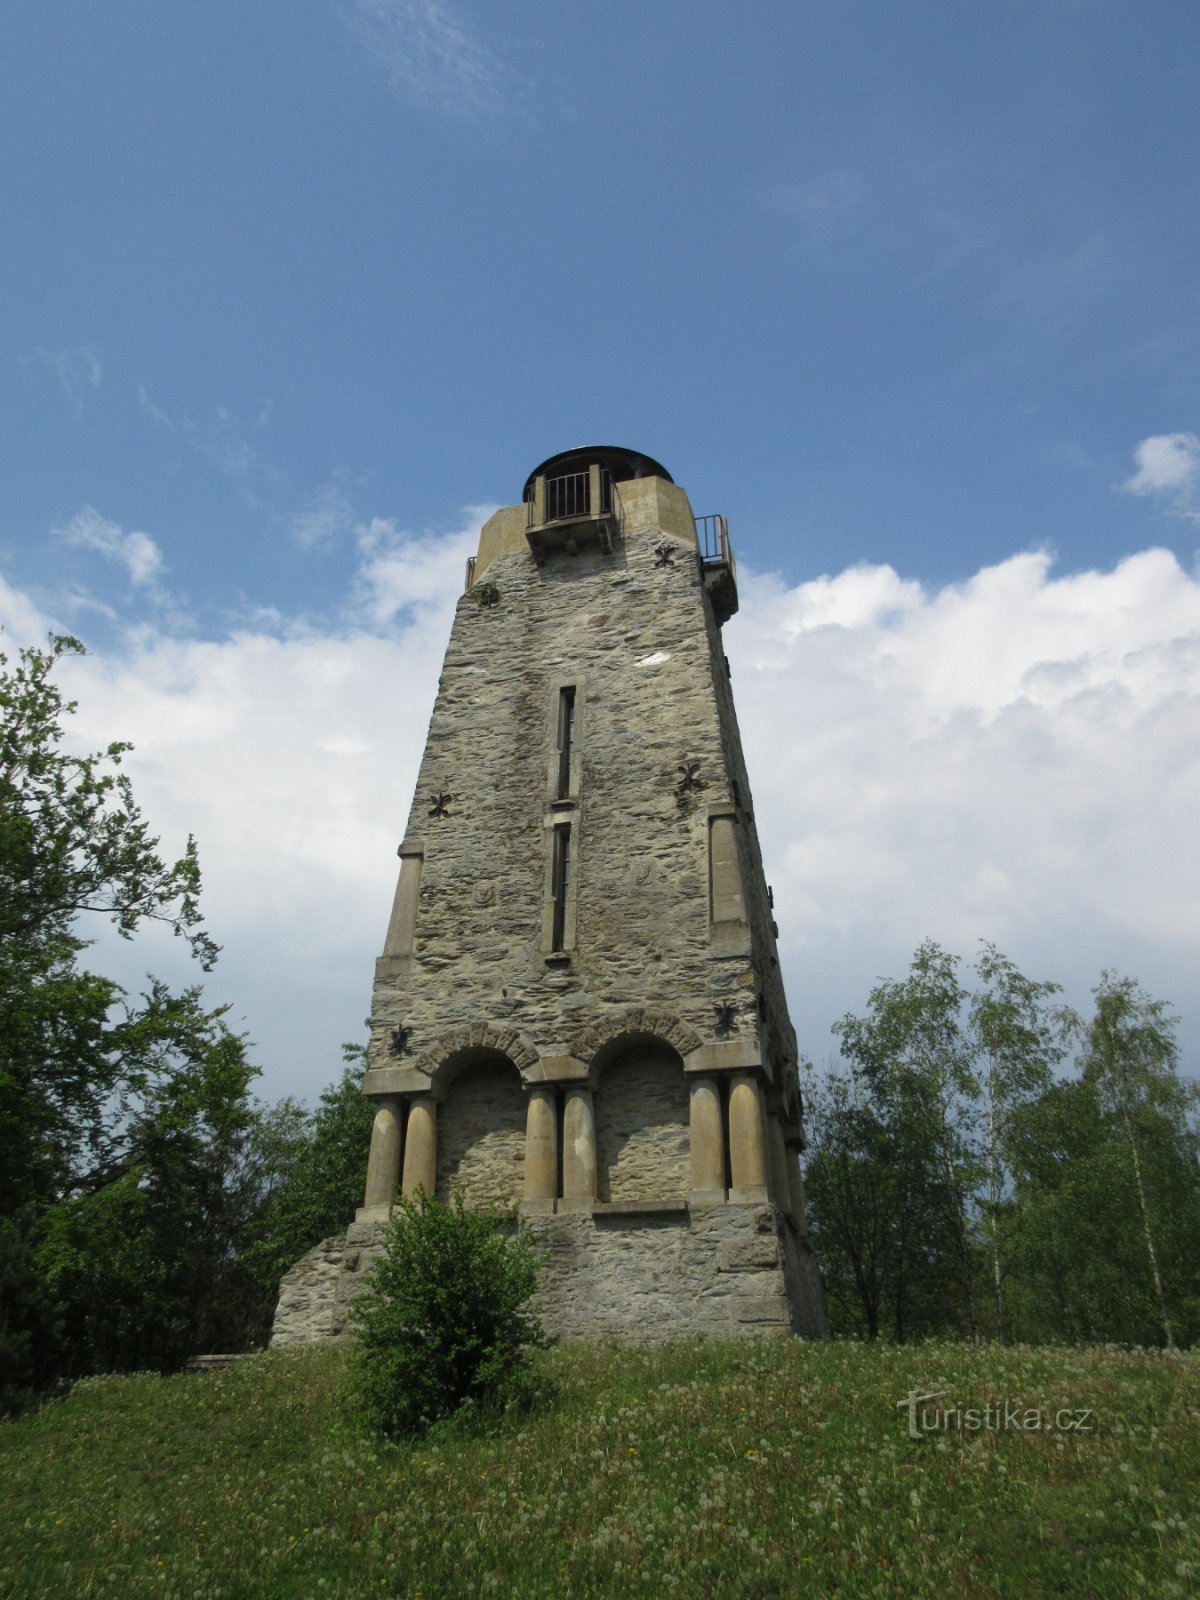 Bismarck Lookout Tower